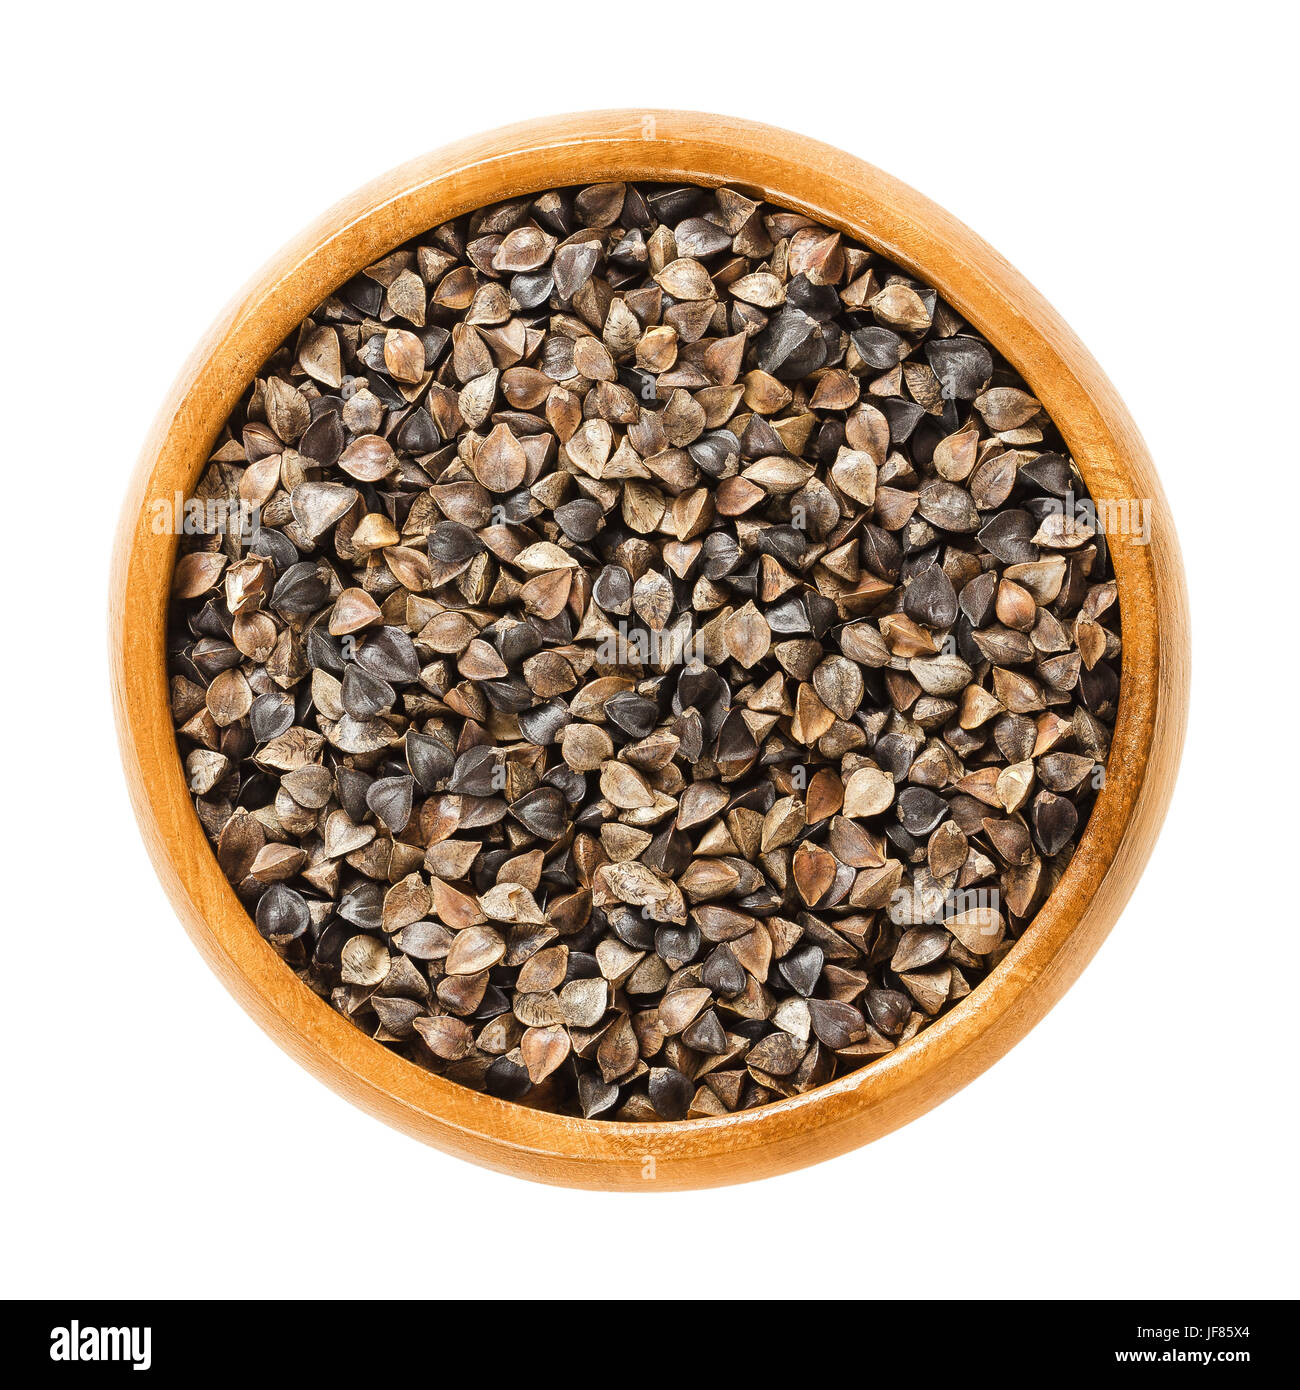 El alforfón común semillas con cascos en el tazón de madera. Fagopyrum esculentum, también Japonés o silverhull trigo sarraceno. Sin Gluten pseudocereal. Semillas secas. Foto de stock